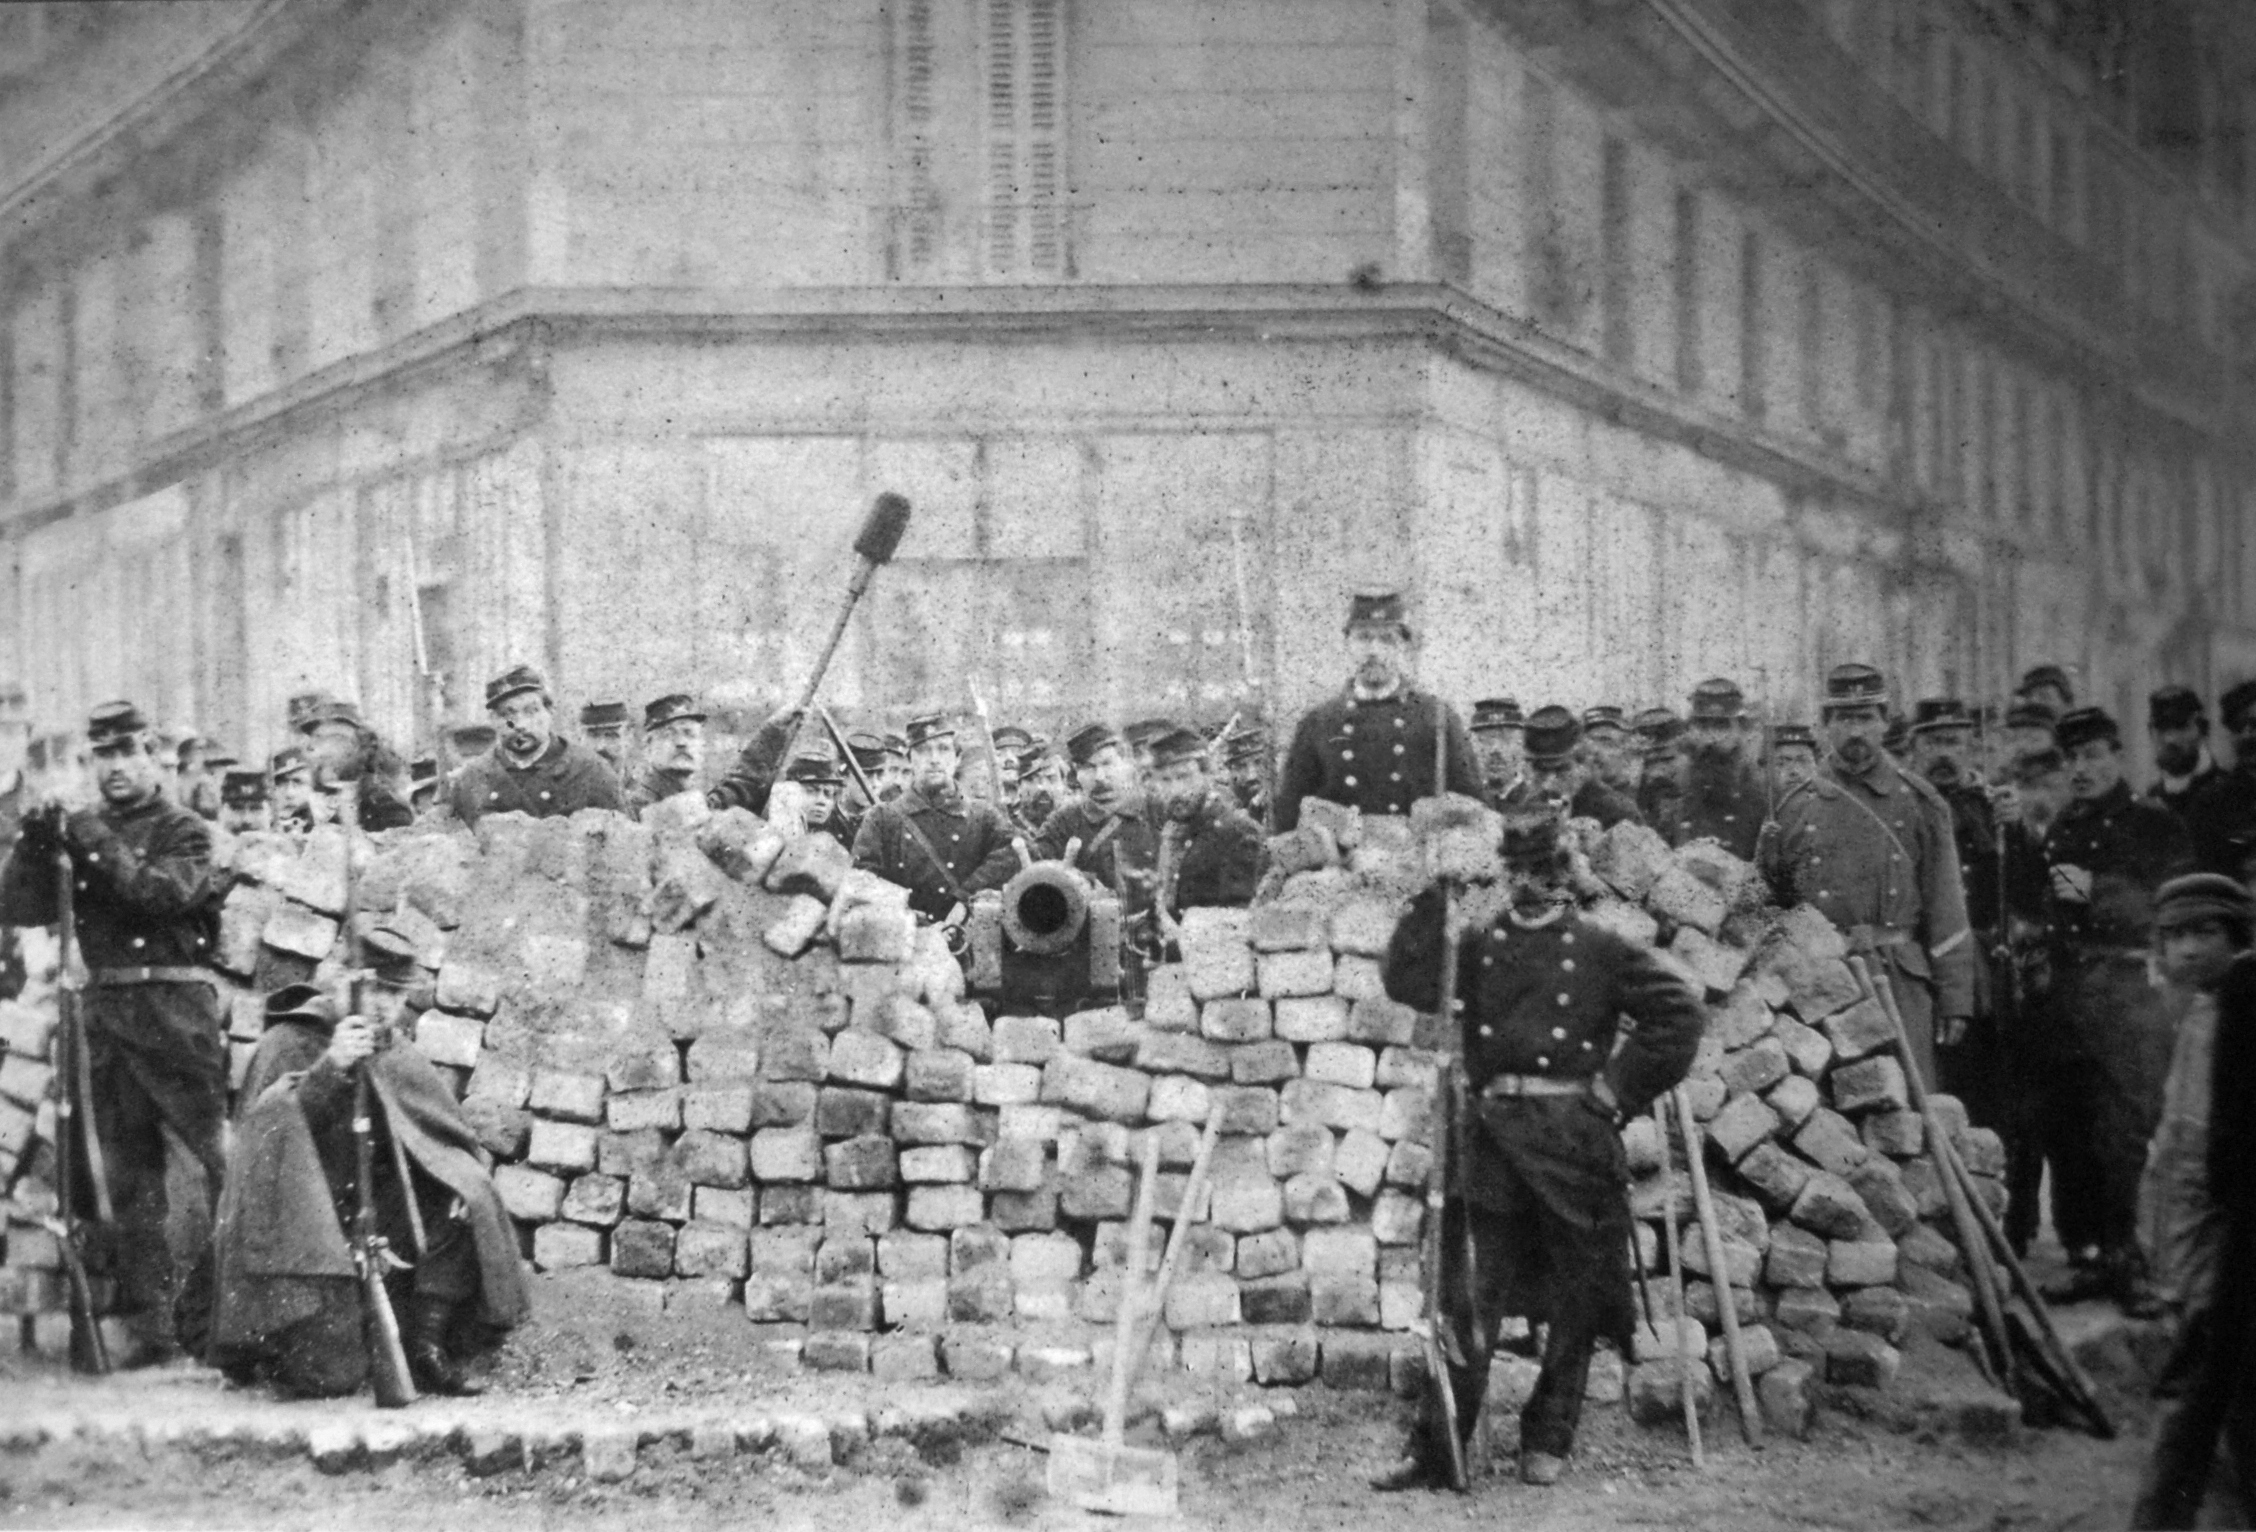 10-Bruno-Brakhais-Barricade-Voltaire-Lenoir-Commune-Paris-1871-1871-photograph-CC-Public-Domainpng